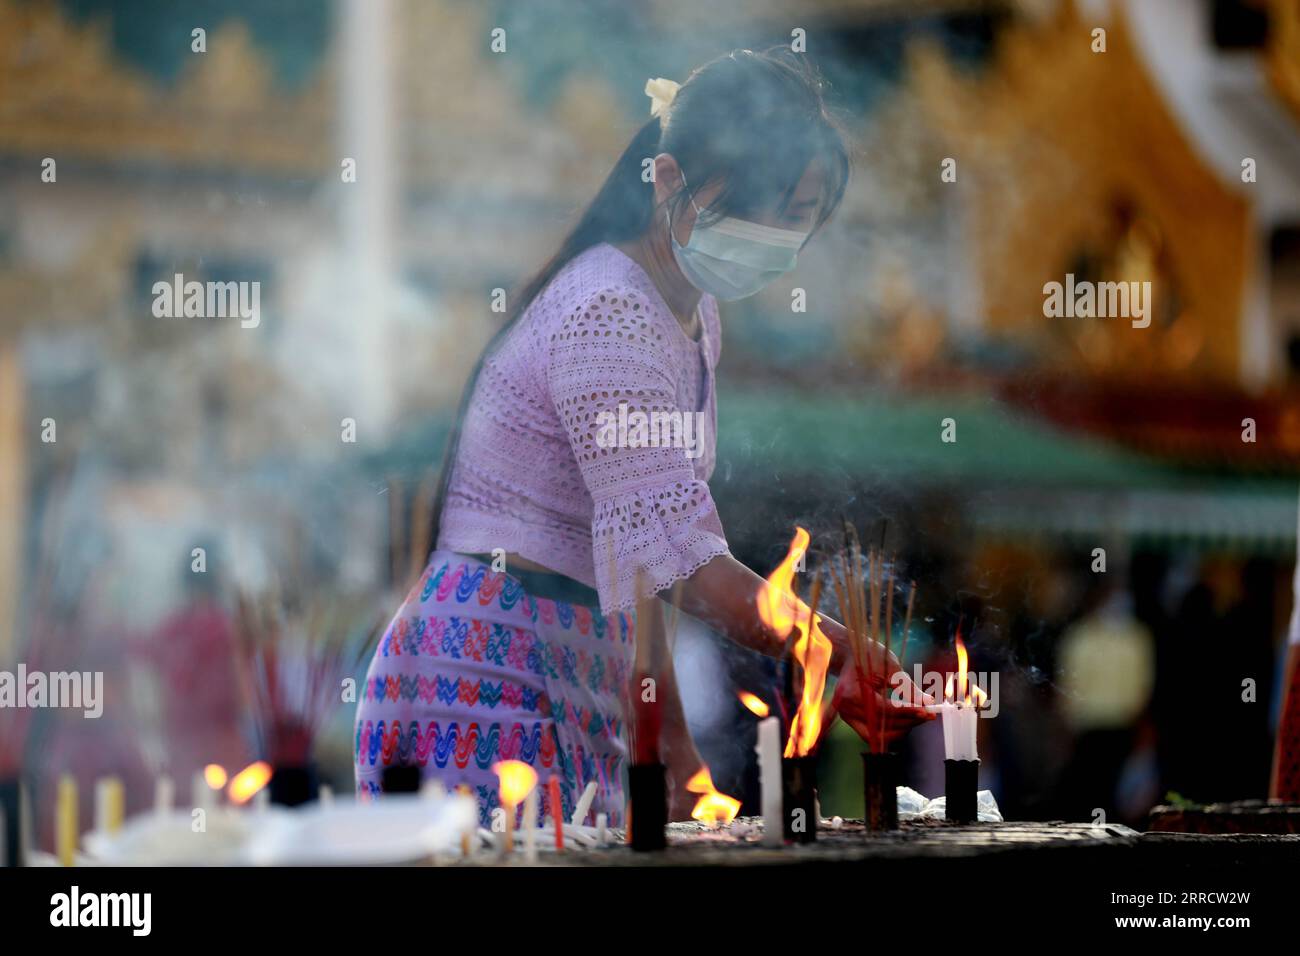 211118 -- YANGON, 18. November 2021 -- Eine Frau zündet Kerzen während des traditionellen Tazaungdaing Festivals in der Shwedagon-Pagode in Yangon, Myanmar, 18. November 2021 an. Das Tazaungdaing Festival, auch als Festival der Lichter bekannt, fällt in den achten Monat des traditionellen Myanmar-Kalenders. Es wird als Nationalfeiertag in Myanmar gefeiert. MYANMAR-YANGON-TRADITIONAL TAZAUNGDAING FESTIVAL UxAung PUBLICATIONxNOTxINxCHN Stockfoto